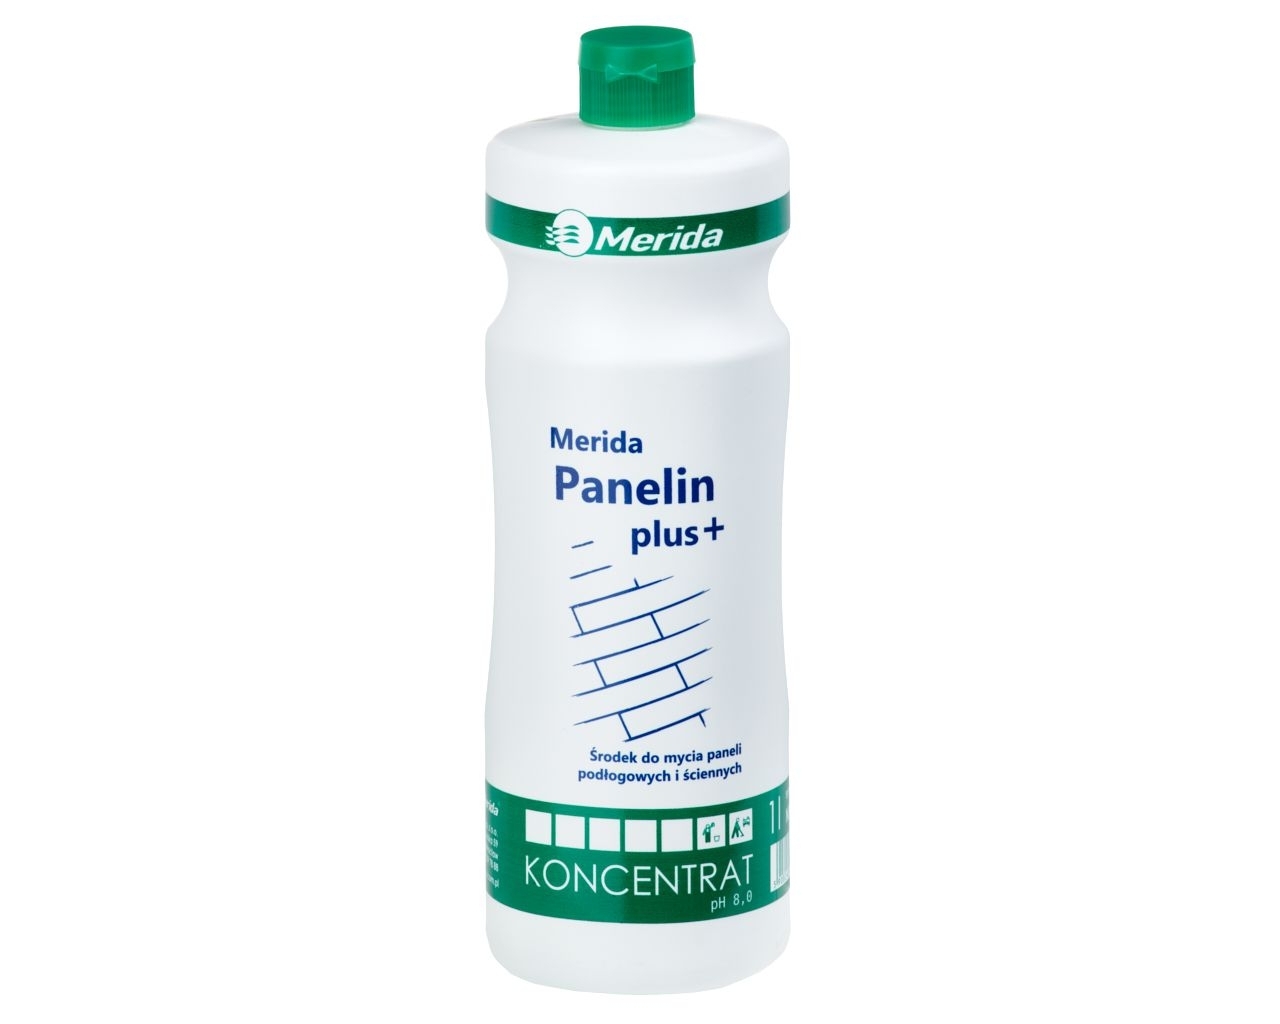 MERIDA PANELIN PLUS+ Środek do mycia paneli podłogowych i ścienych, butelka 1 l